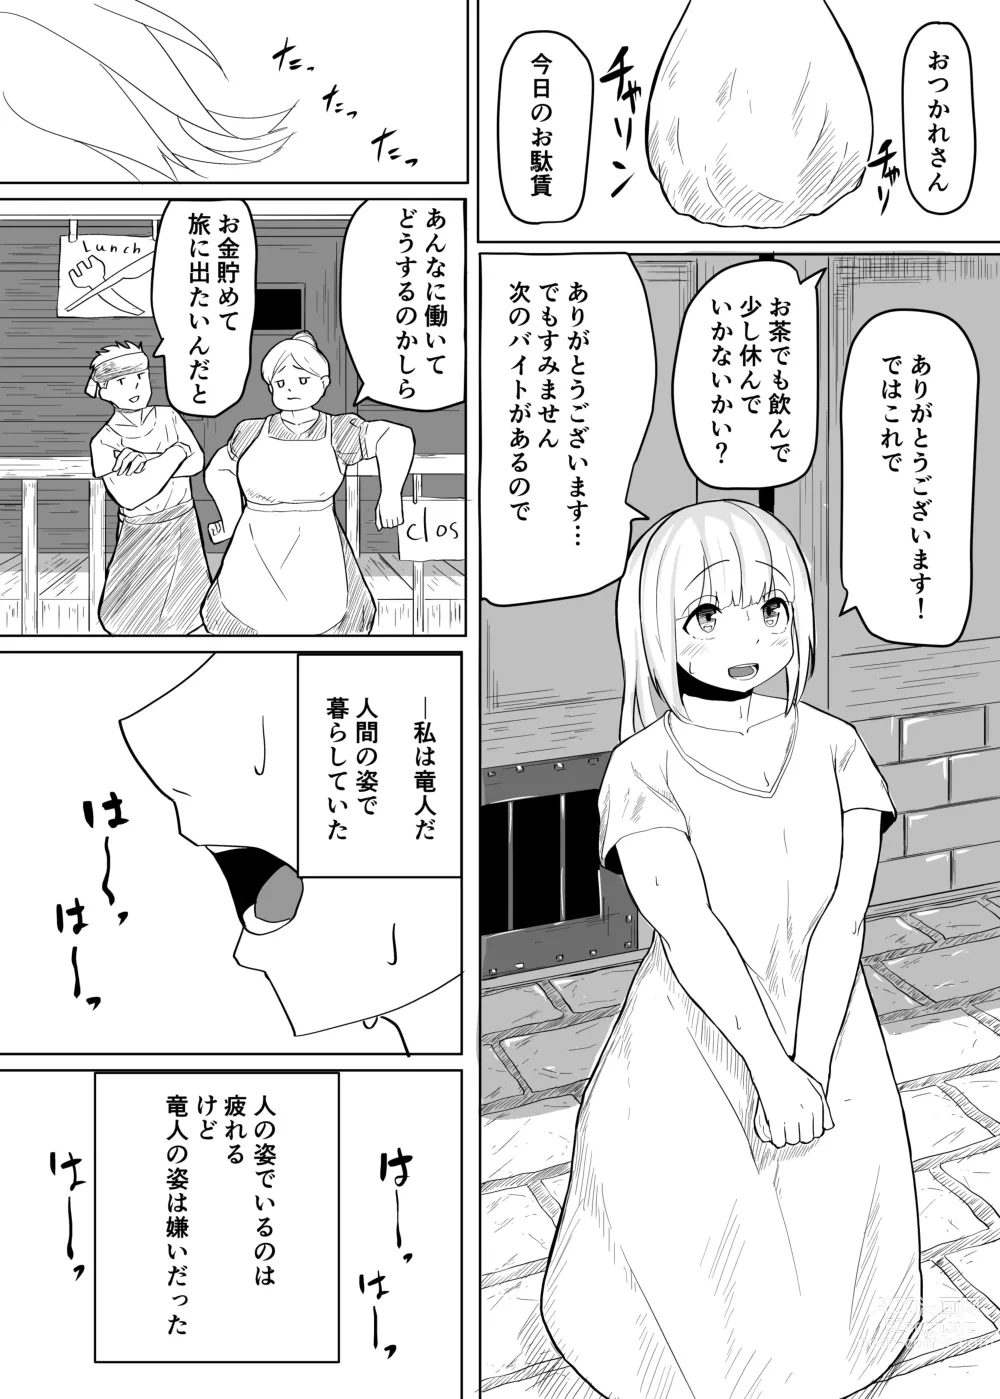 Page 2 of doujinshi Konna Sugata no Watashi demo Suki ni Natte kureru...? Hakugai Ryuujo to Genkai Koroshi-ya no Junai Kairaku Ochi